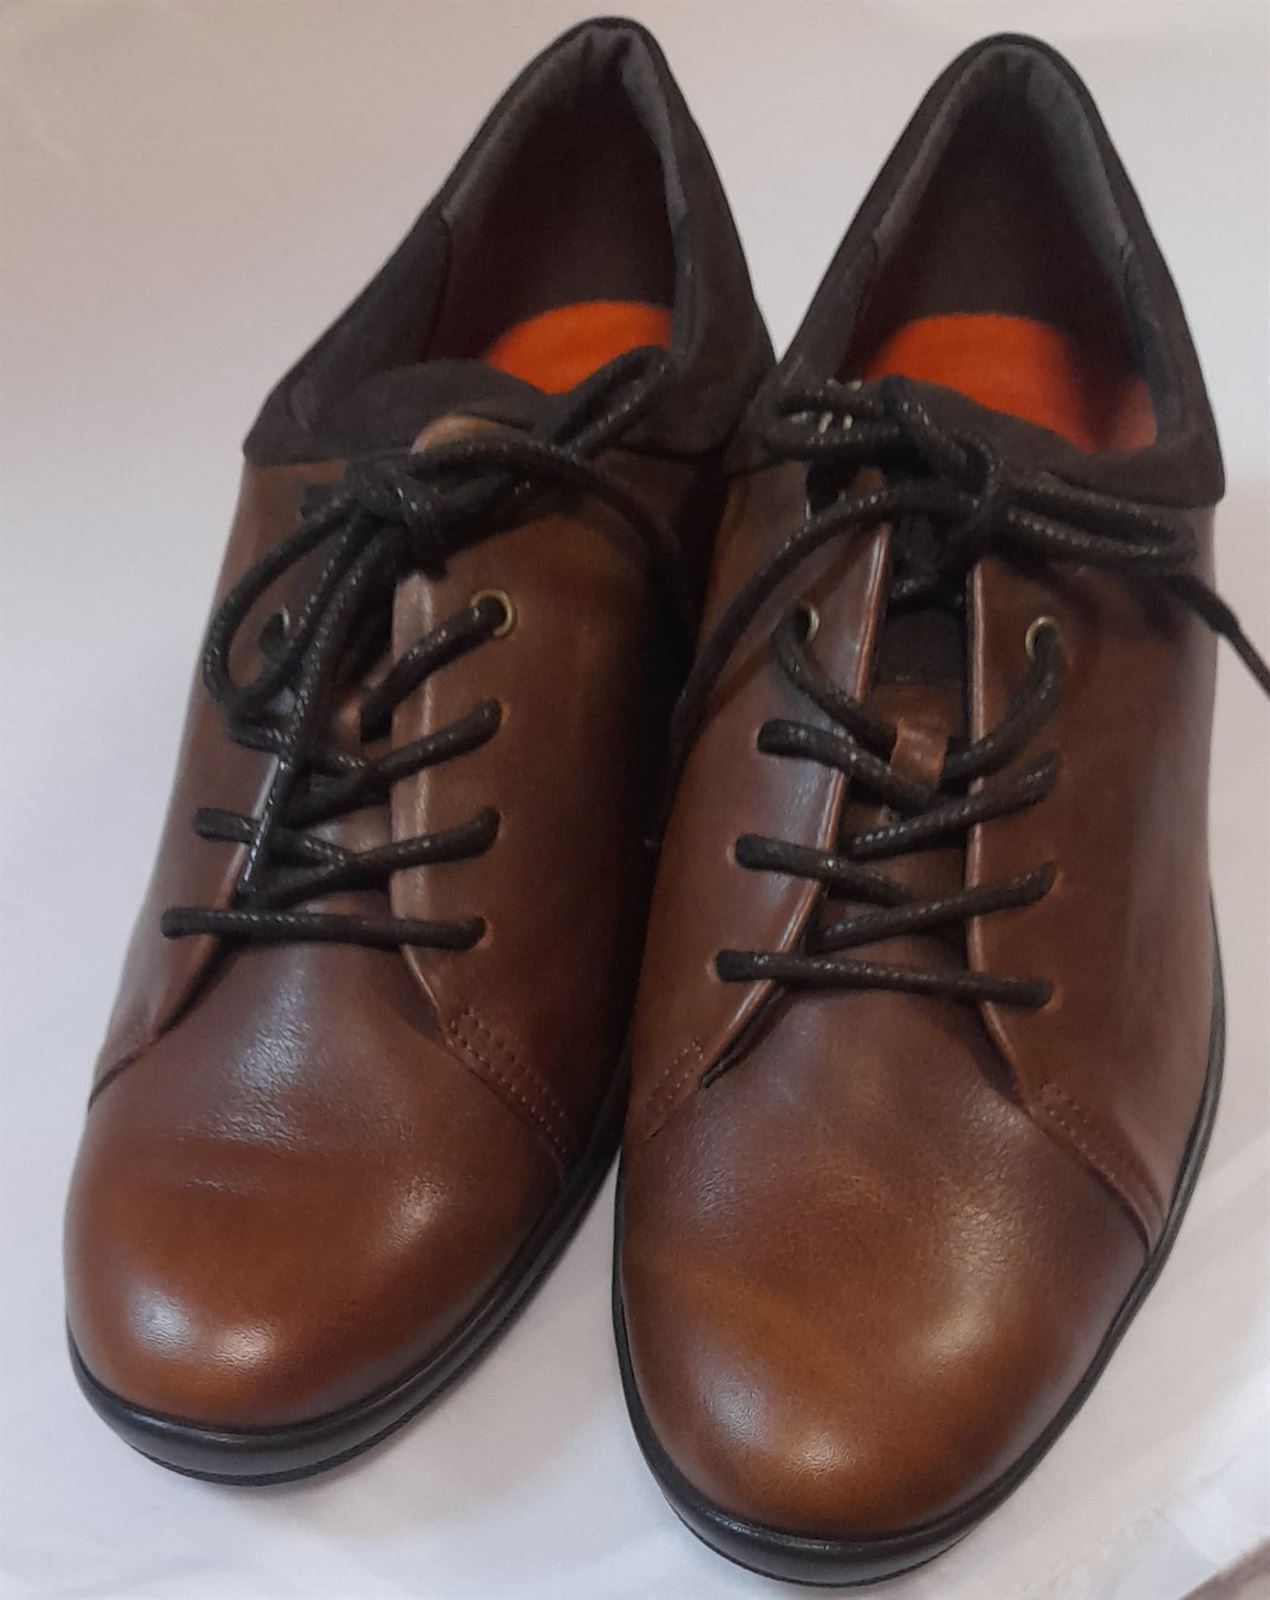 Zapato Fiordland marrón - Imagen 1